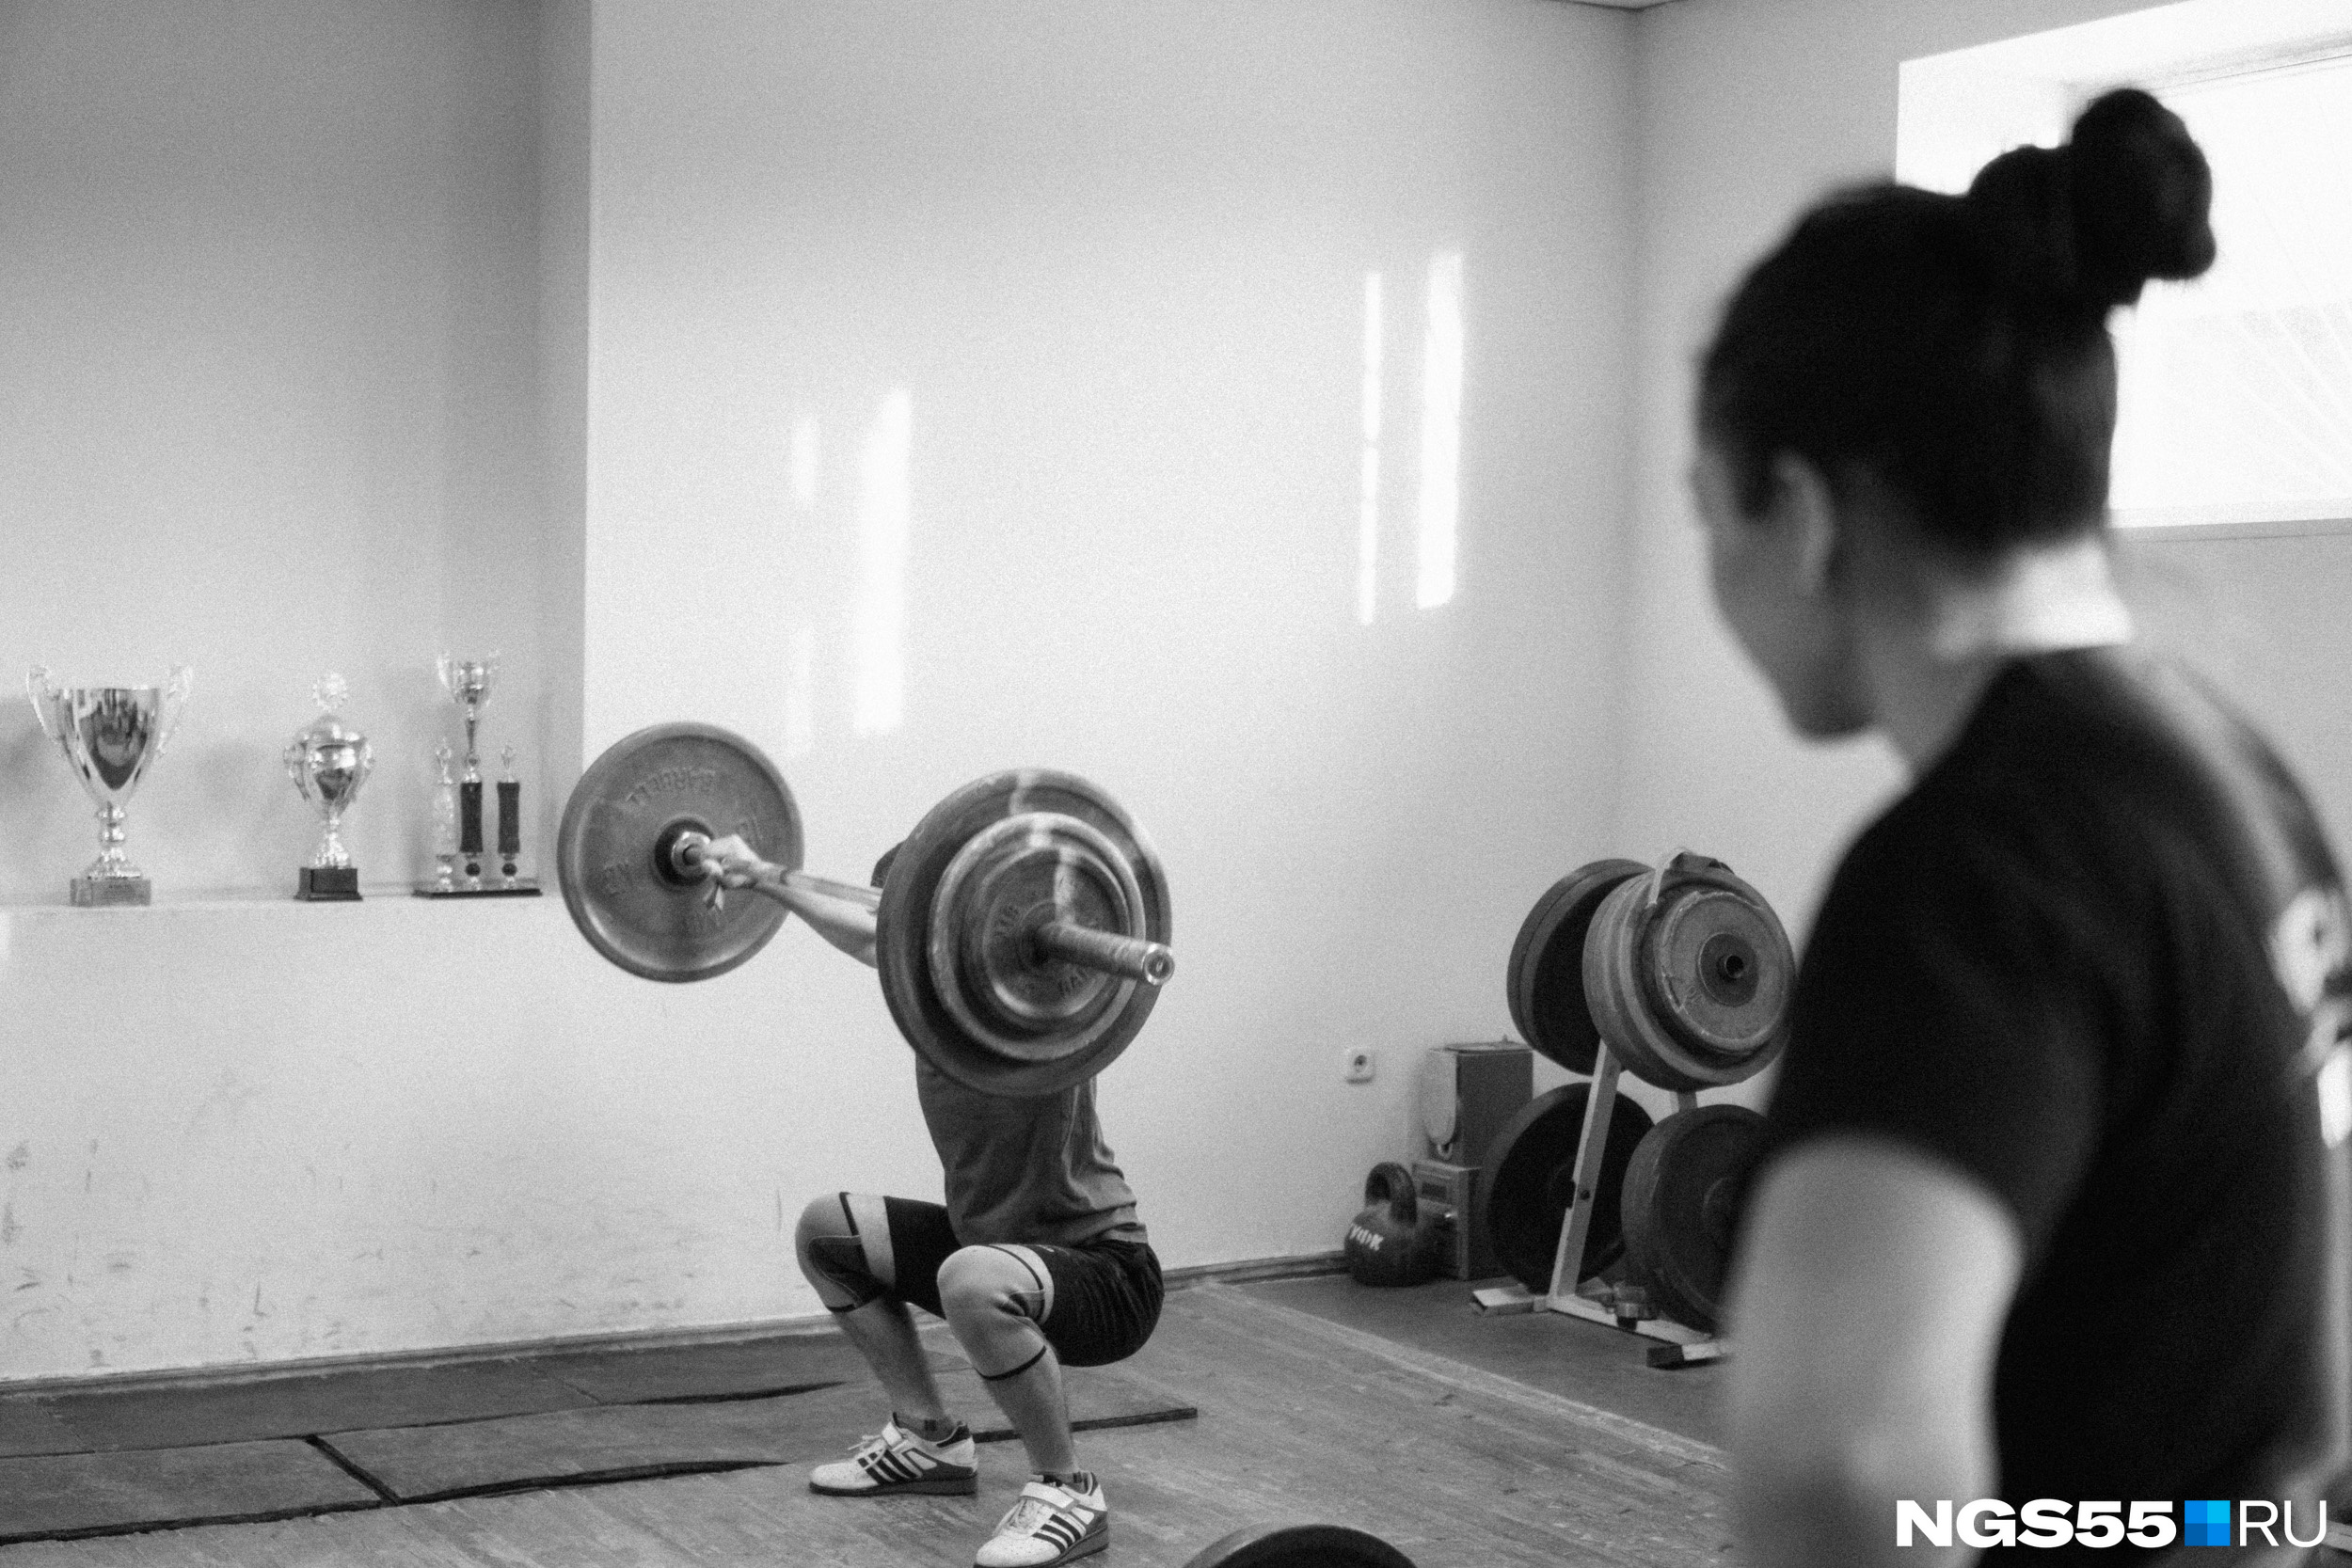 Родители привели Ольгу в спортивную гимнастику, а спустя много лет одобрили её решение заниматься тяжёлой атлетикой